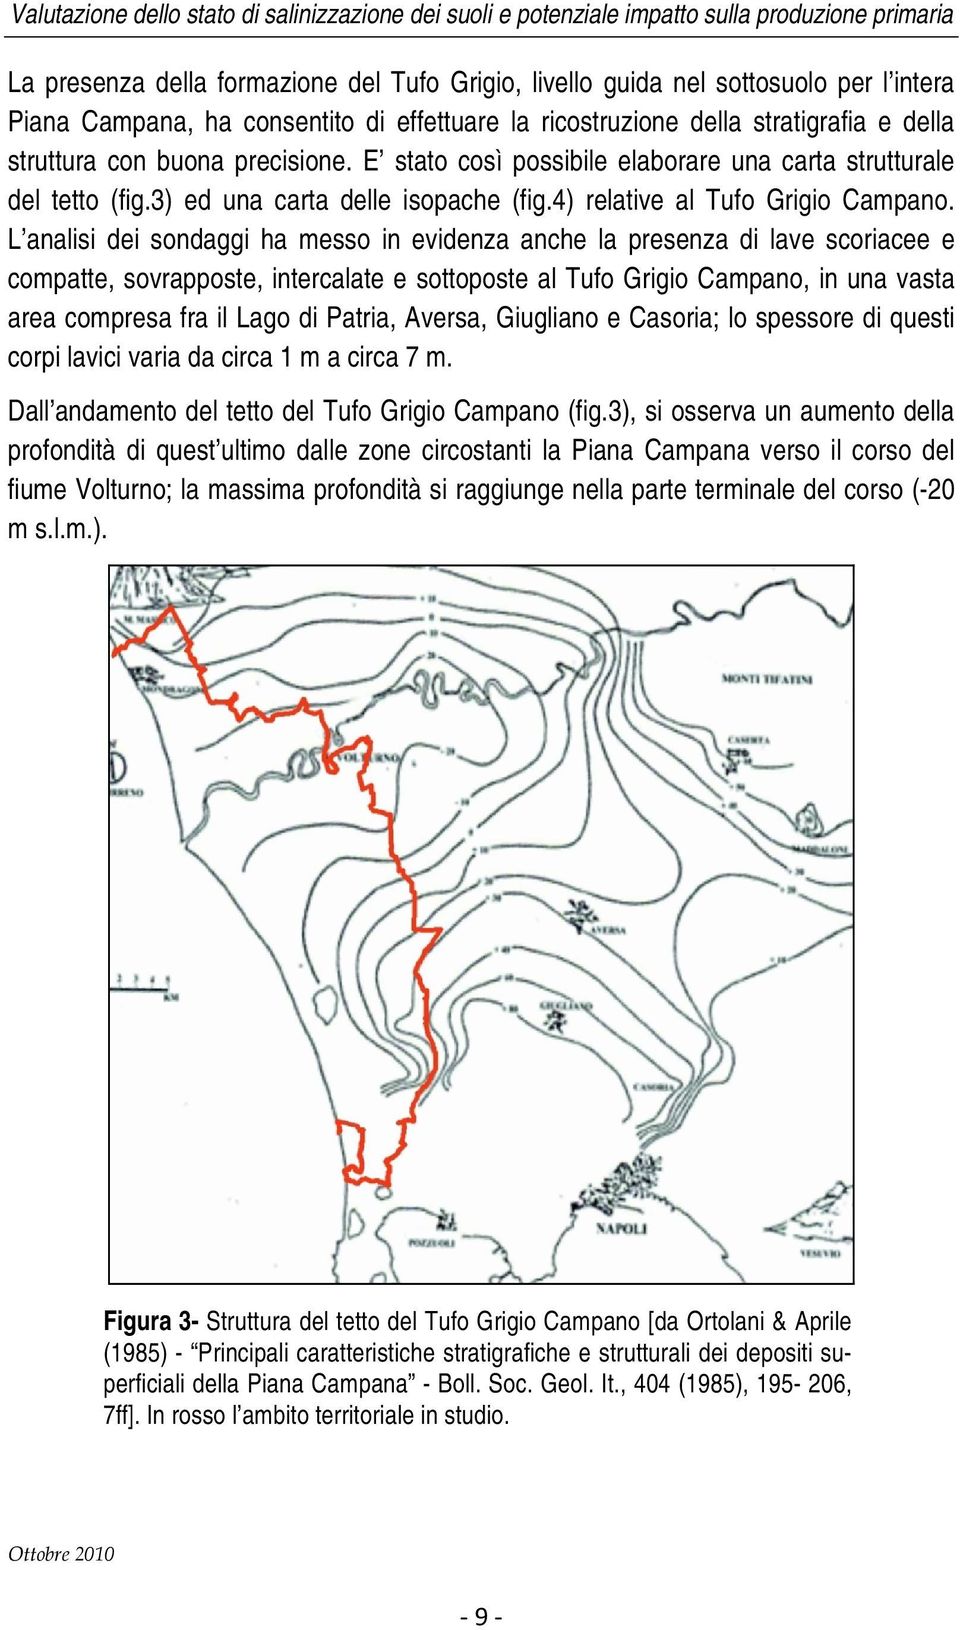 L analisi dei sondaggi ha messo in evidenza anche la presenza di lave scoriacee e compatte, sovrapposte, intercalate e sottoposte al Tufo Grigio Campano, in una vasta area compresa fra il Lago di